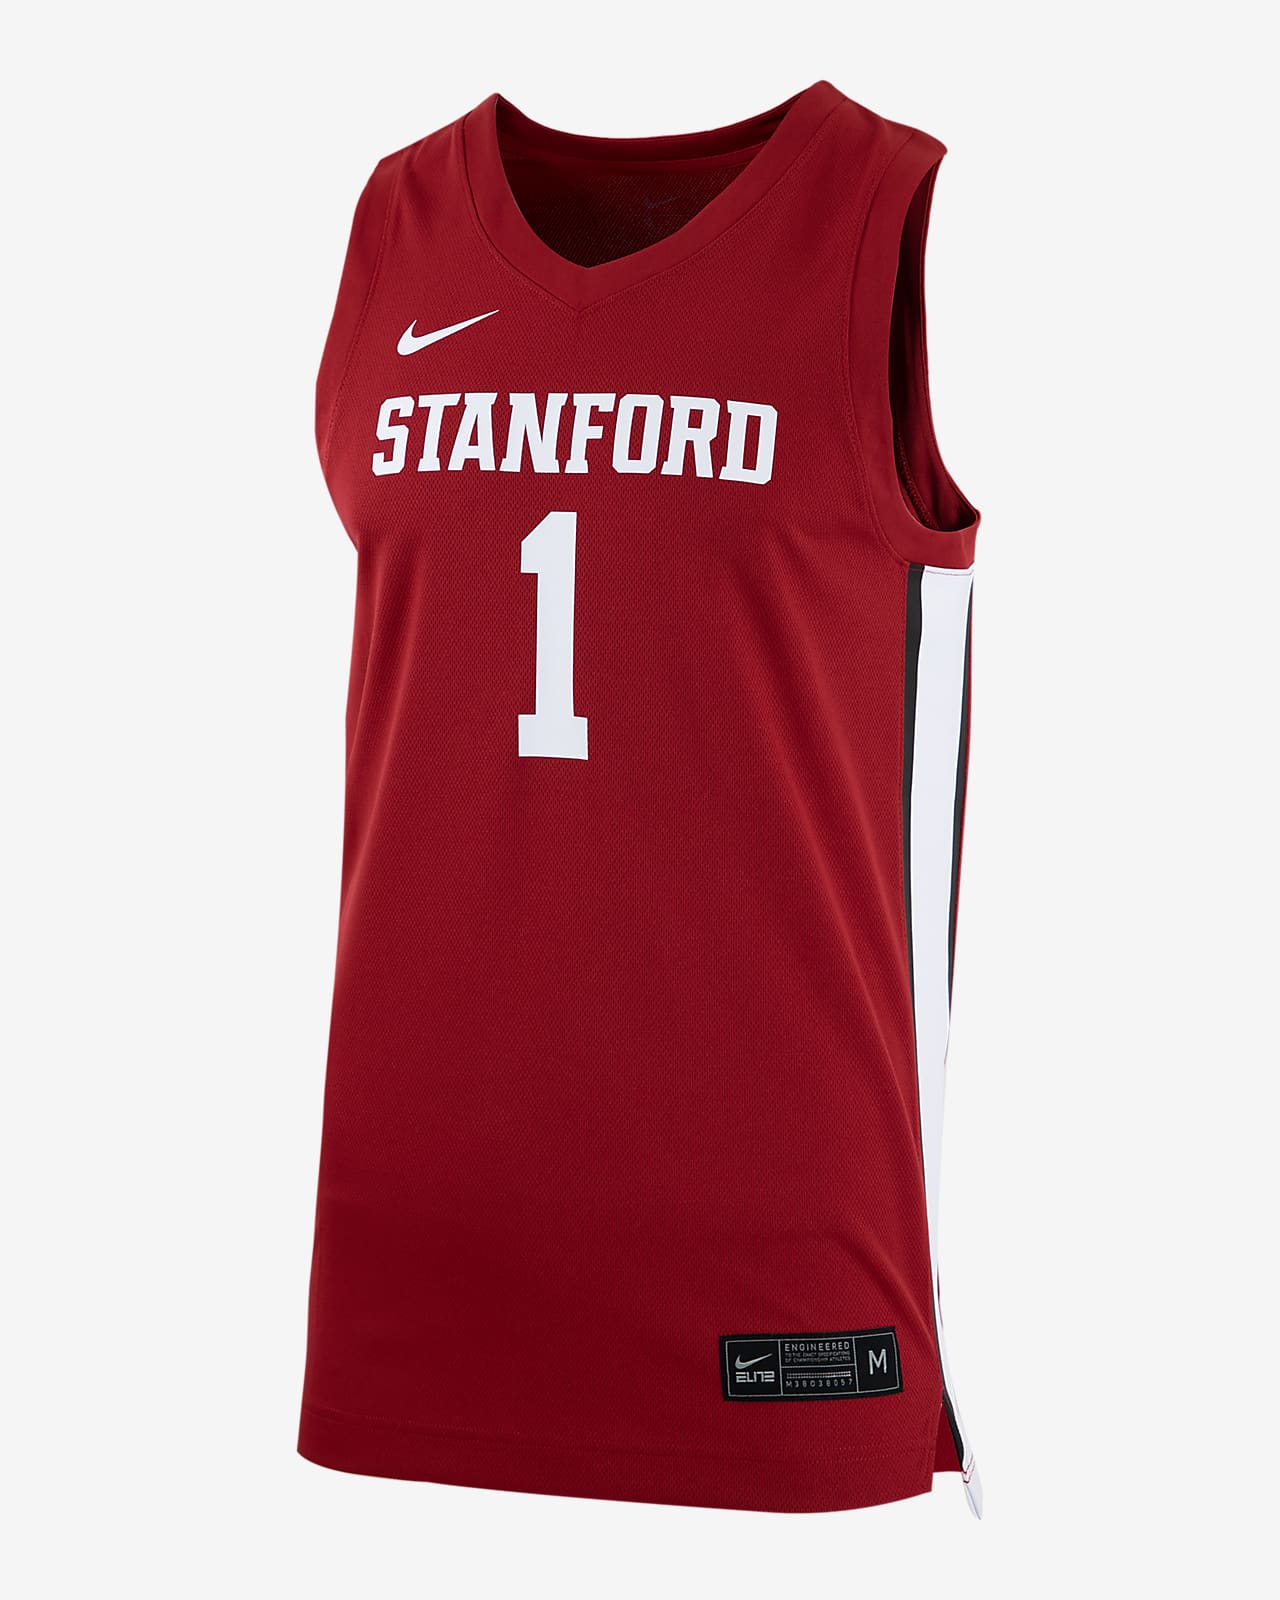 Jersey de básquetbol Nike College (Stanford)